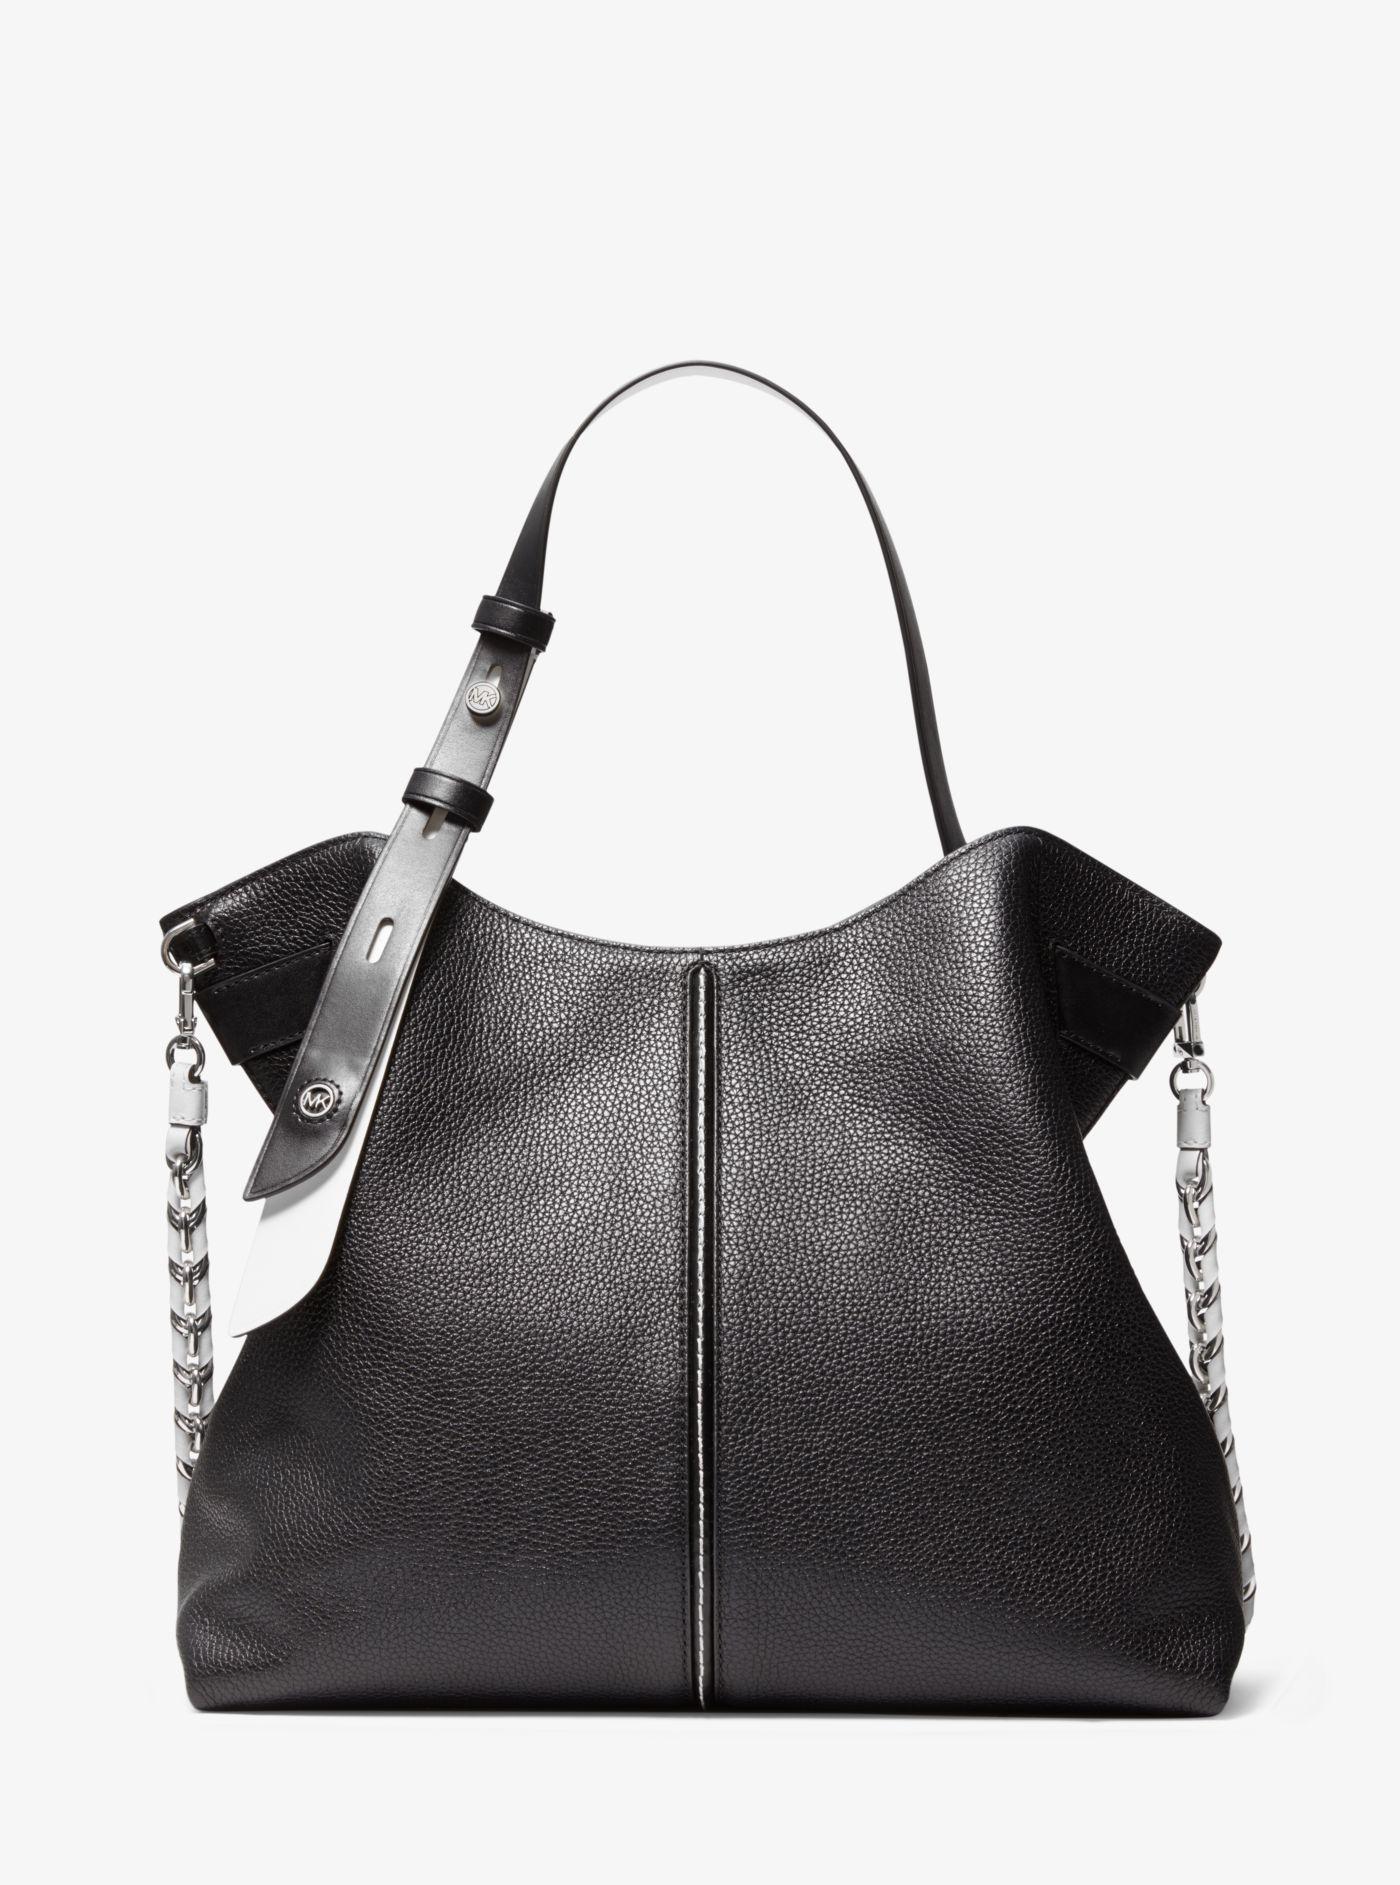 Michael Kors Downtown Astor Large Pebbled Leather Shoulder Bag in Black |  Lyst